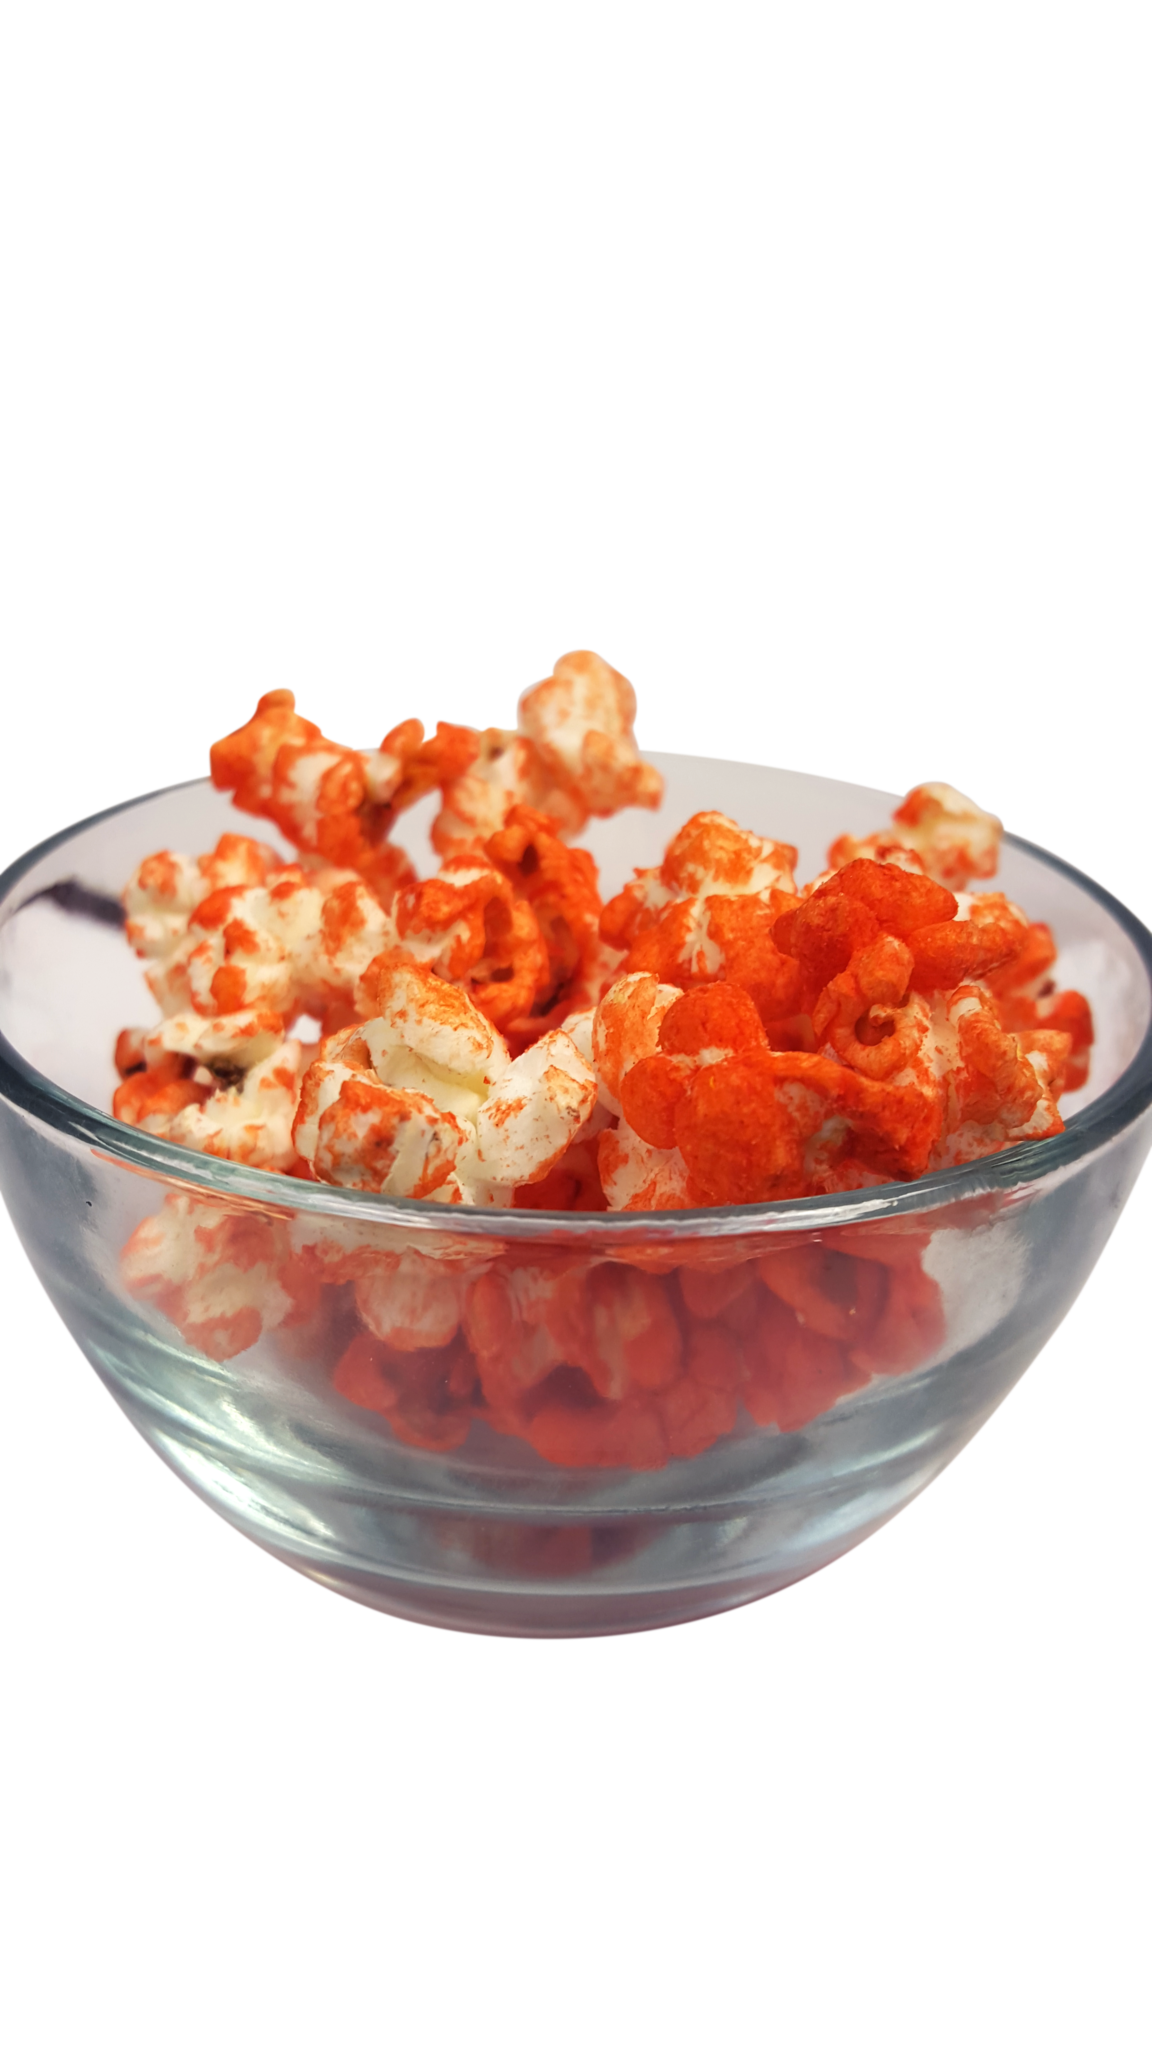 Orange Popcorn in a bowl